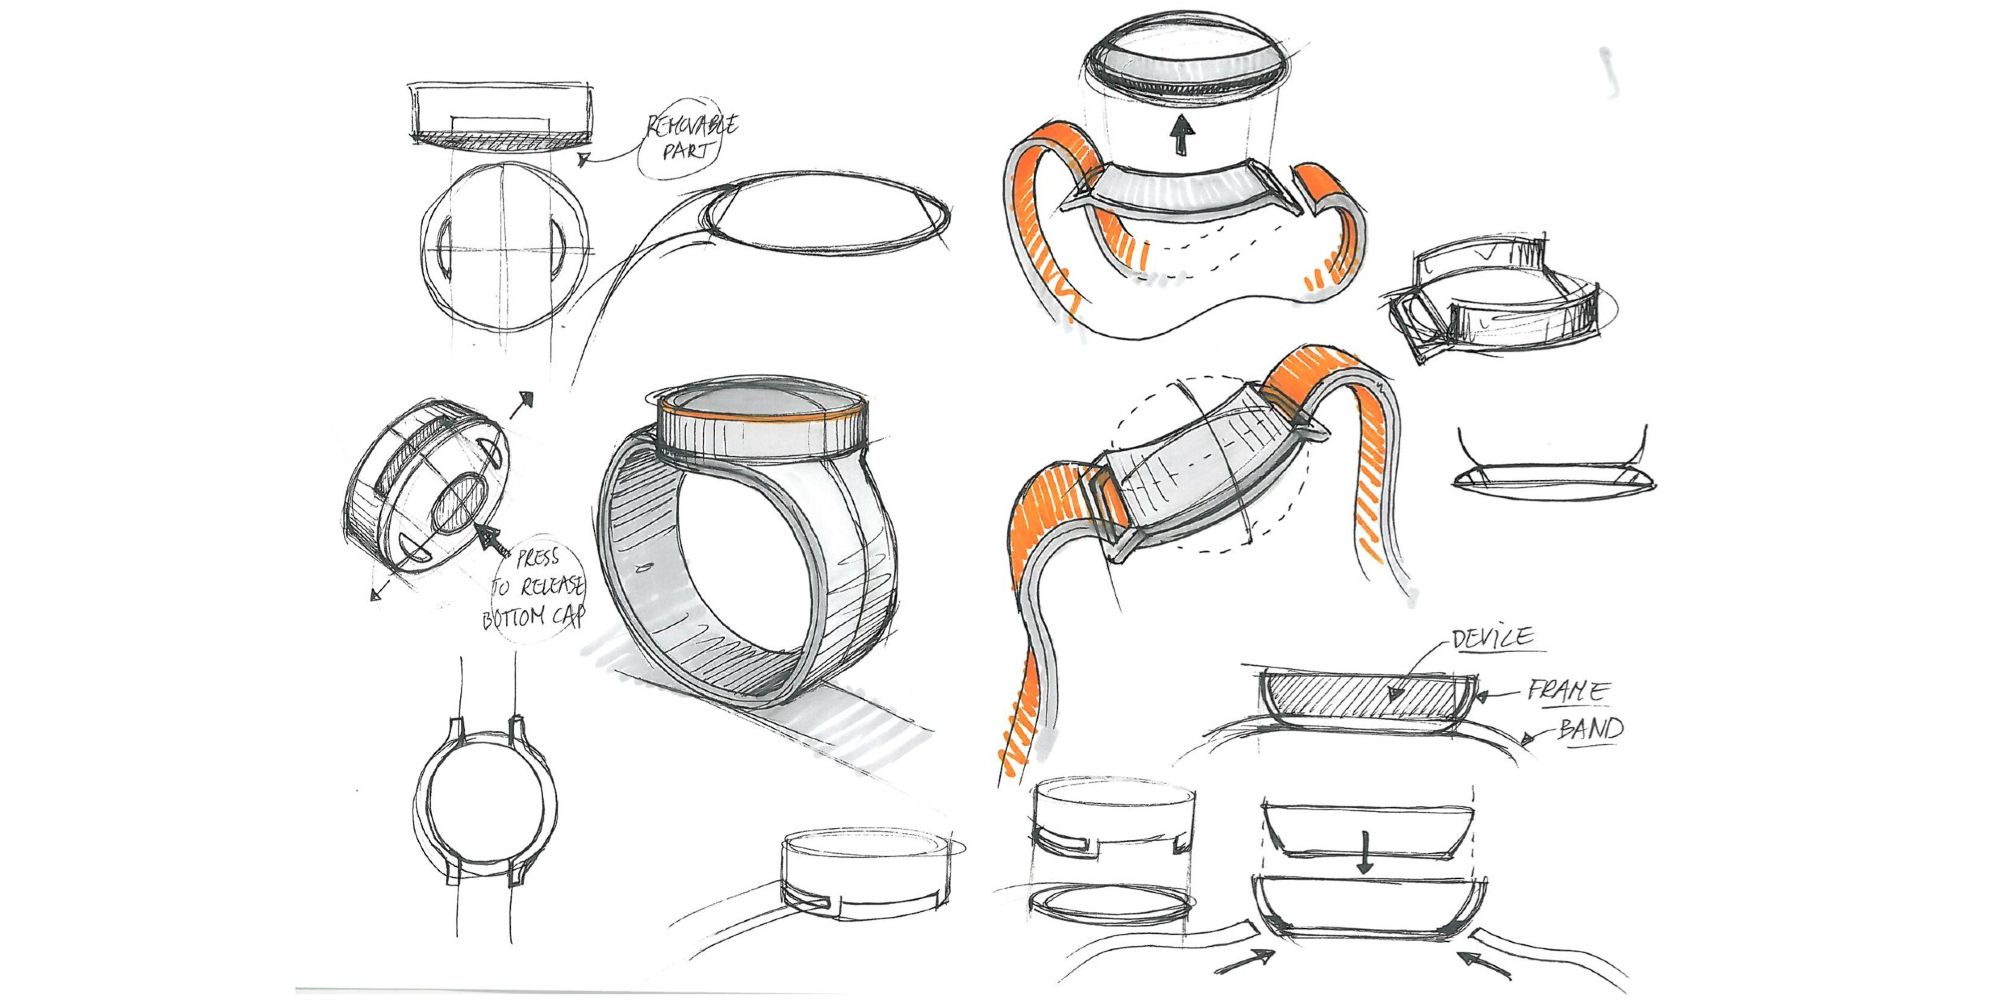 OnePlus smartwatch design sketches